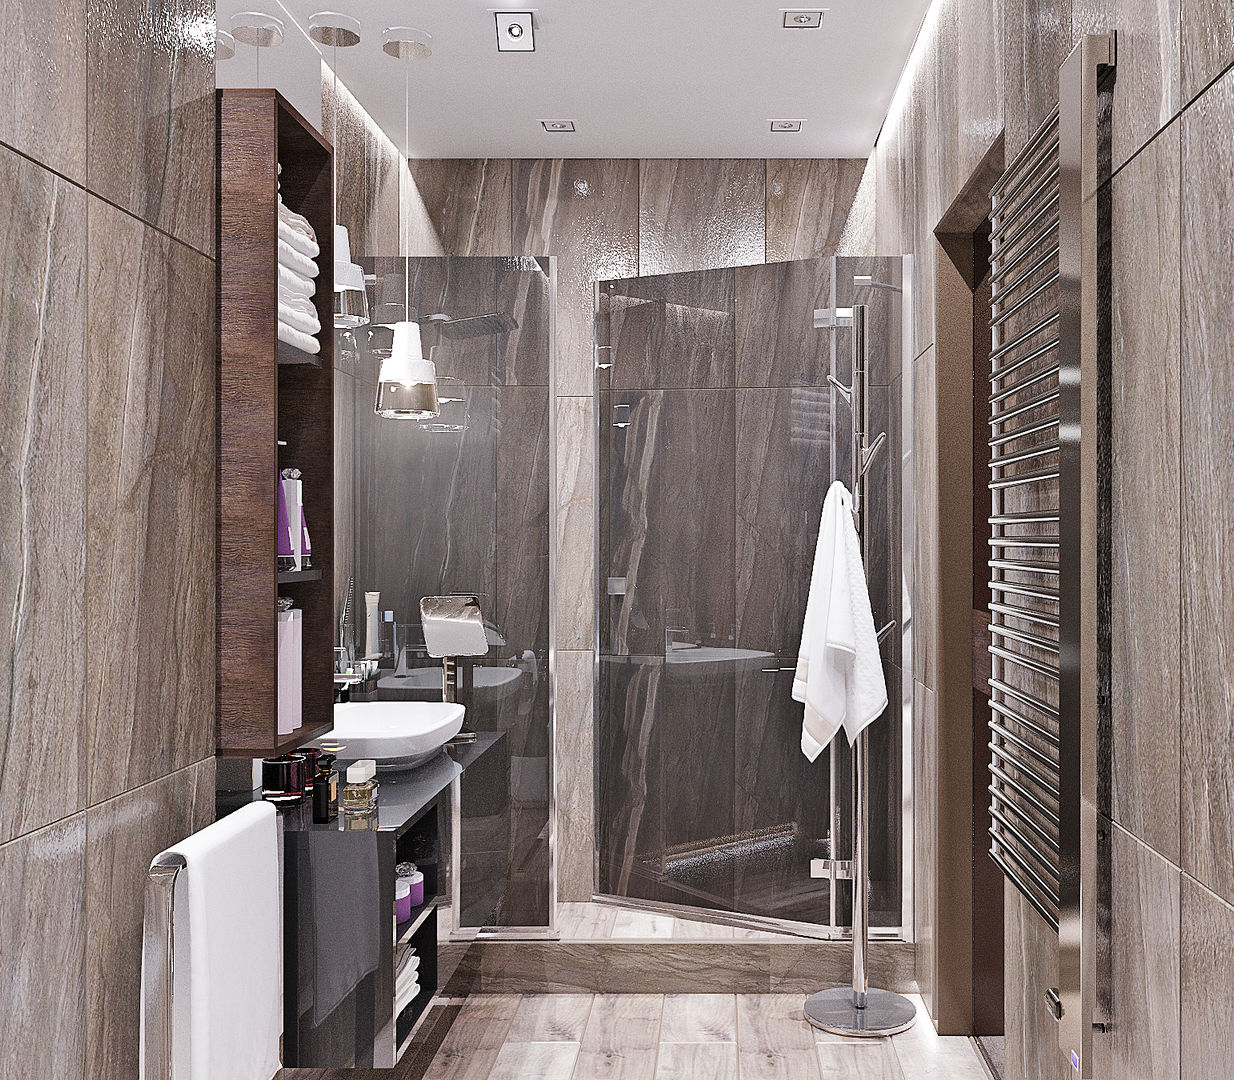 Ванная комната в стиле минимализм, Студия дизайна ROMANIUK DESIGN Студия дизайна ROMANIUK DESIGN Industriale Badezimmer